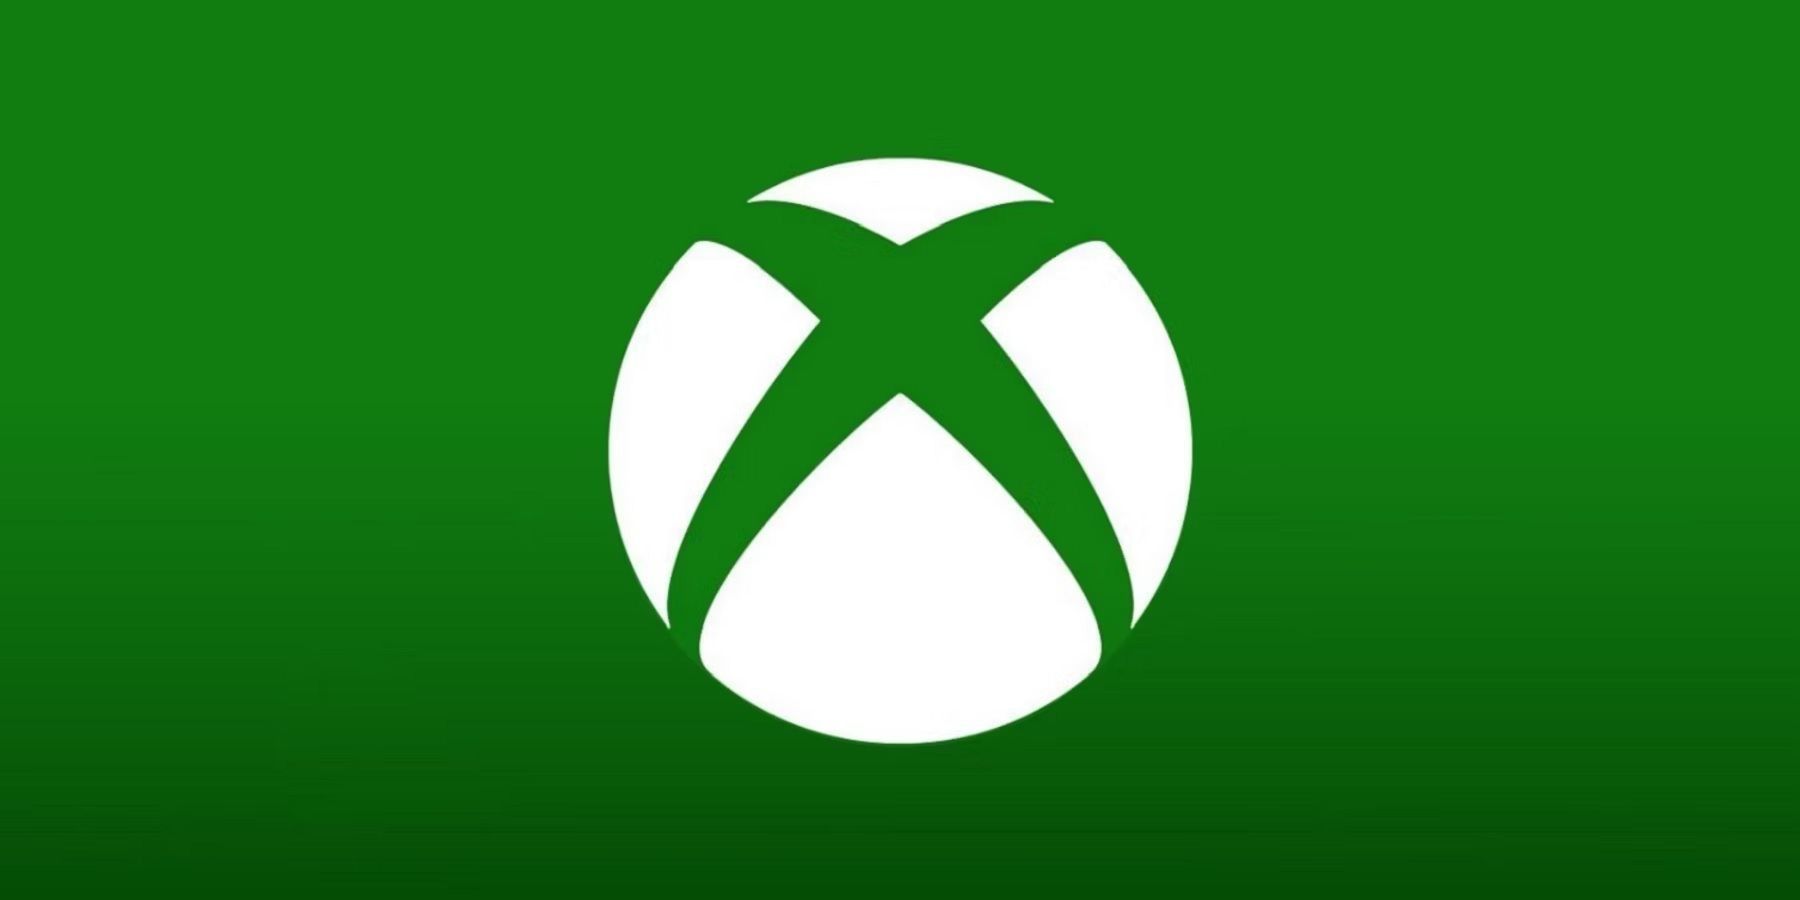 Xbox logo achievements